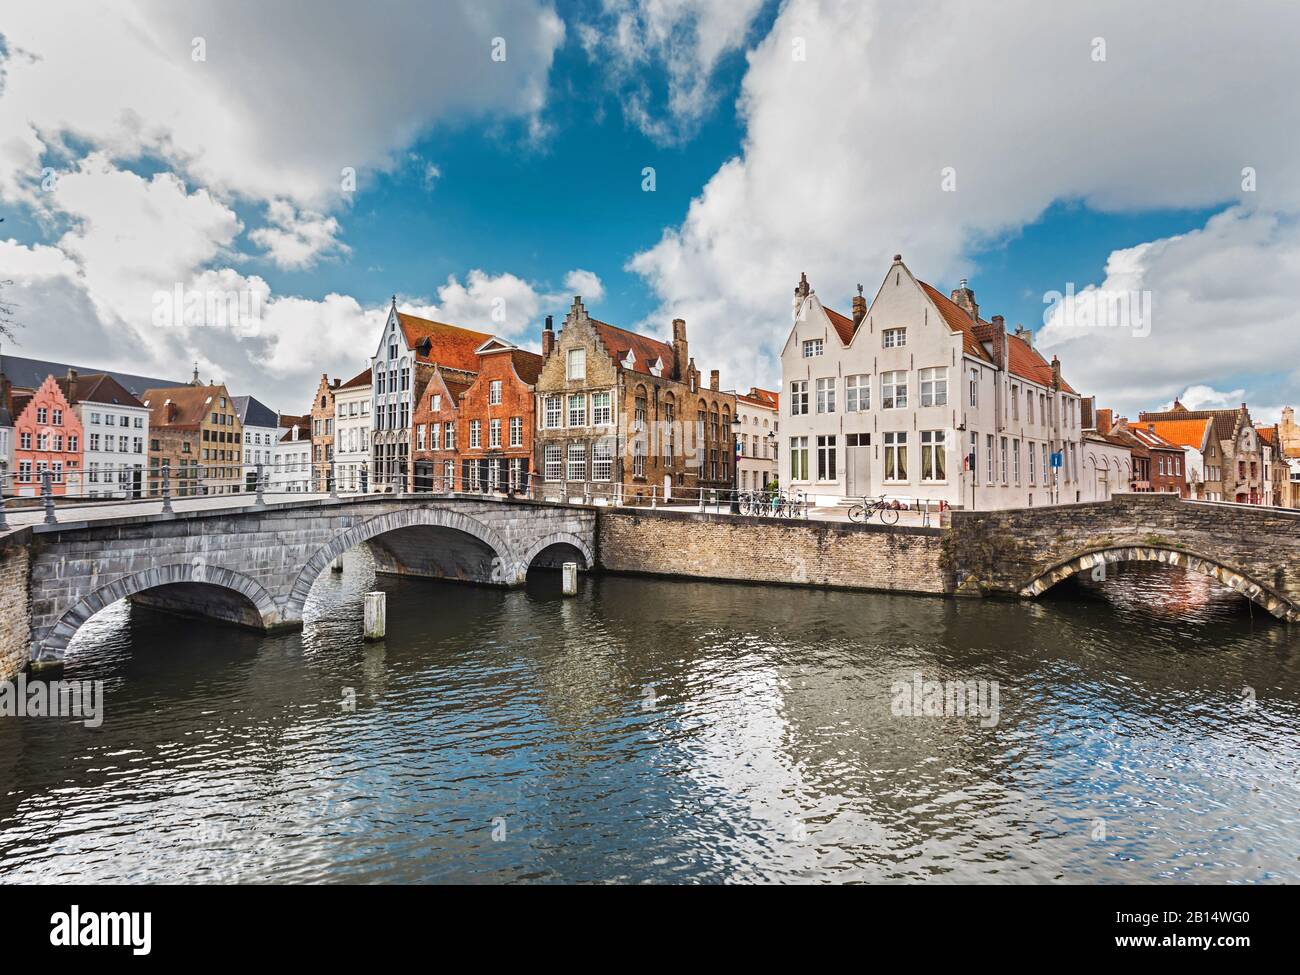 Viejas casas de piedra coloridas cerca del canal son el punto de referencia de Brujas, Bélgica. Los canales de Brujas con viejos puentes de piedra son una atracción turística famosa. Foto de stock